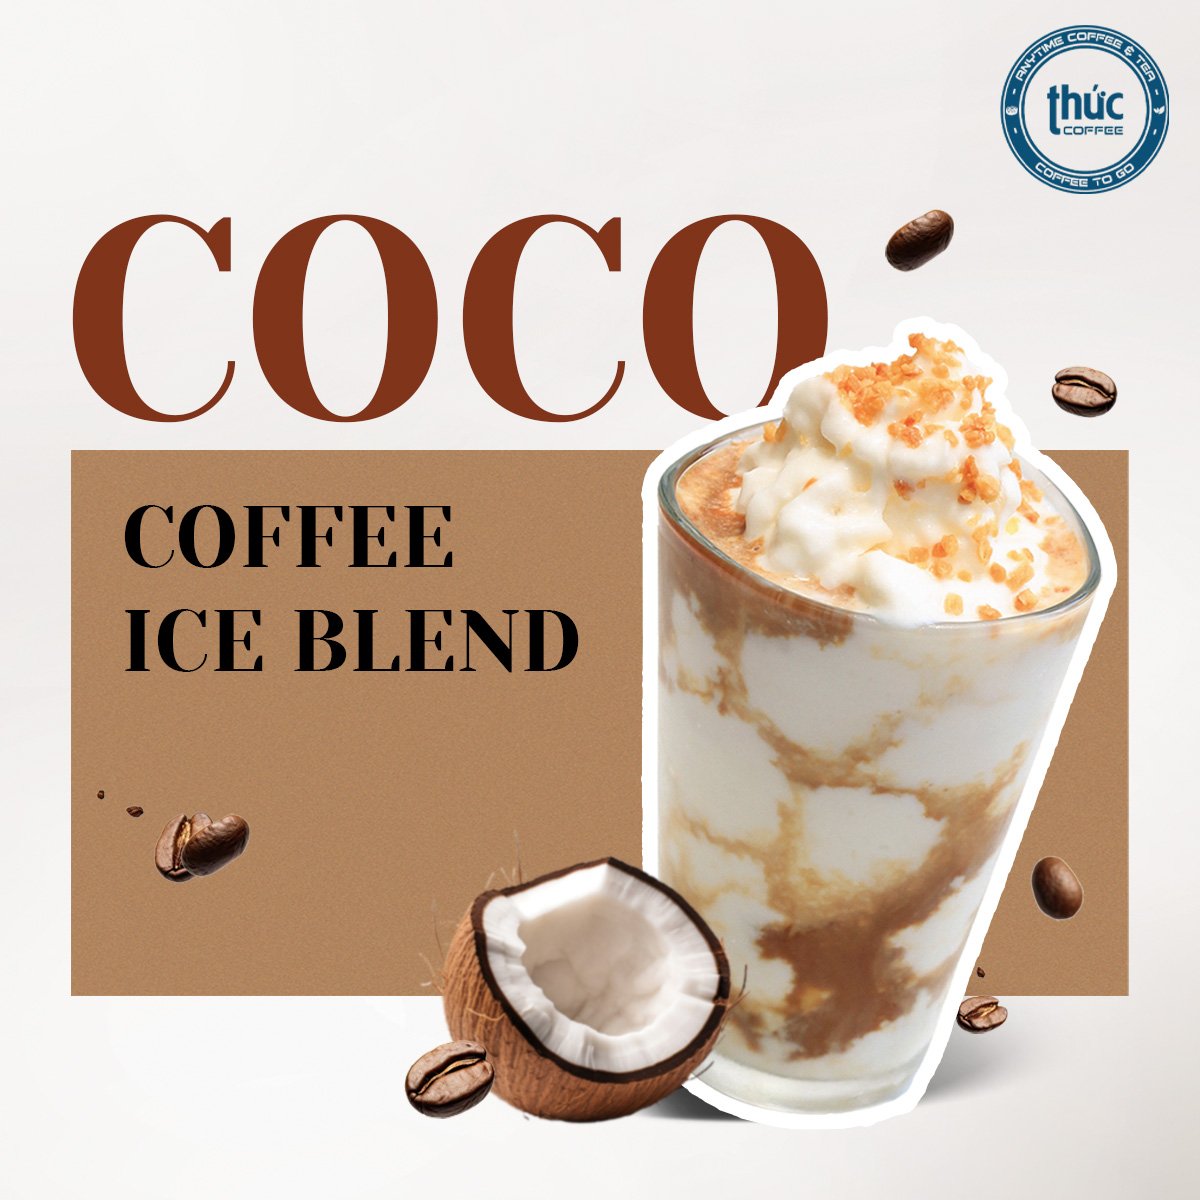 COCO COFFEE ICEBLEND - ĐÃ CÓ MẶT TẠI THỨC COFFEE